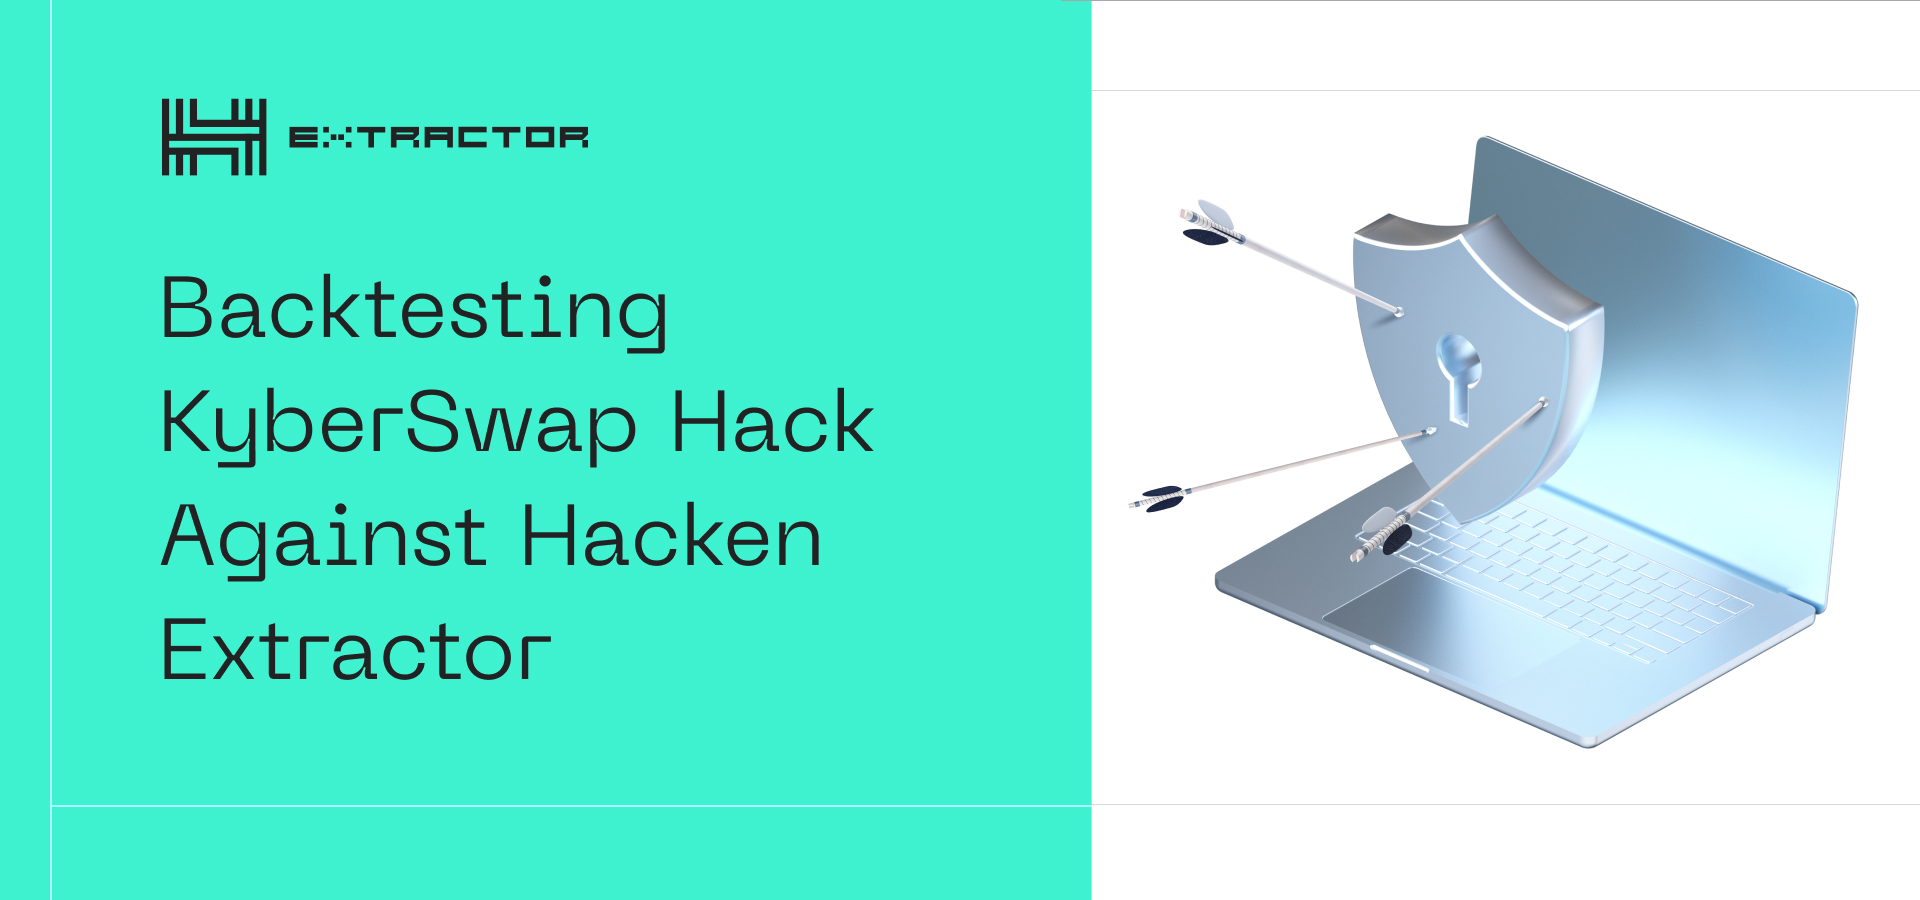 Prevention of KyberSwap Hack by Hacken Extractor